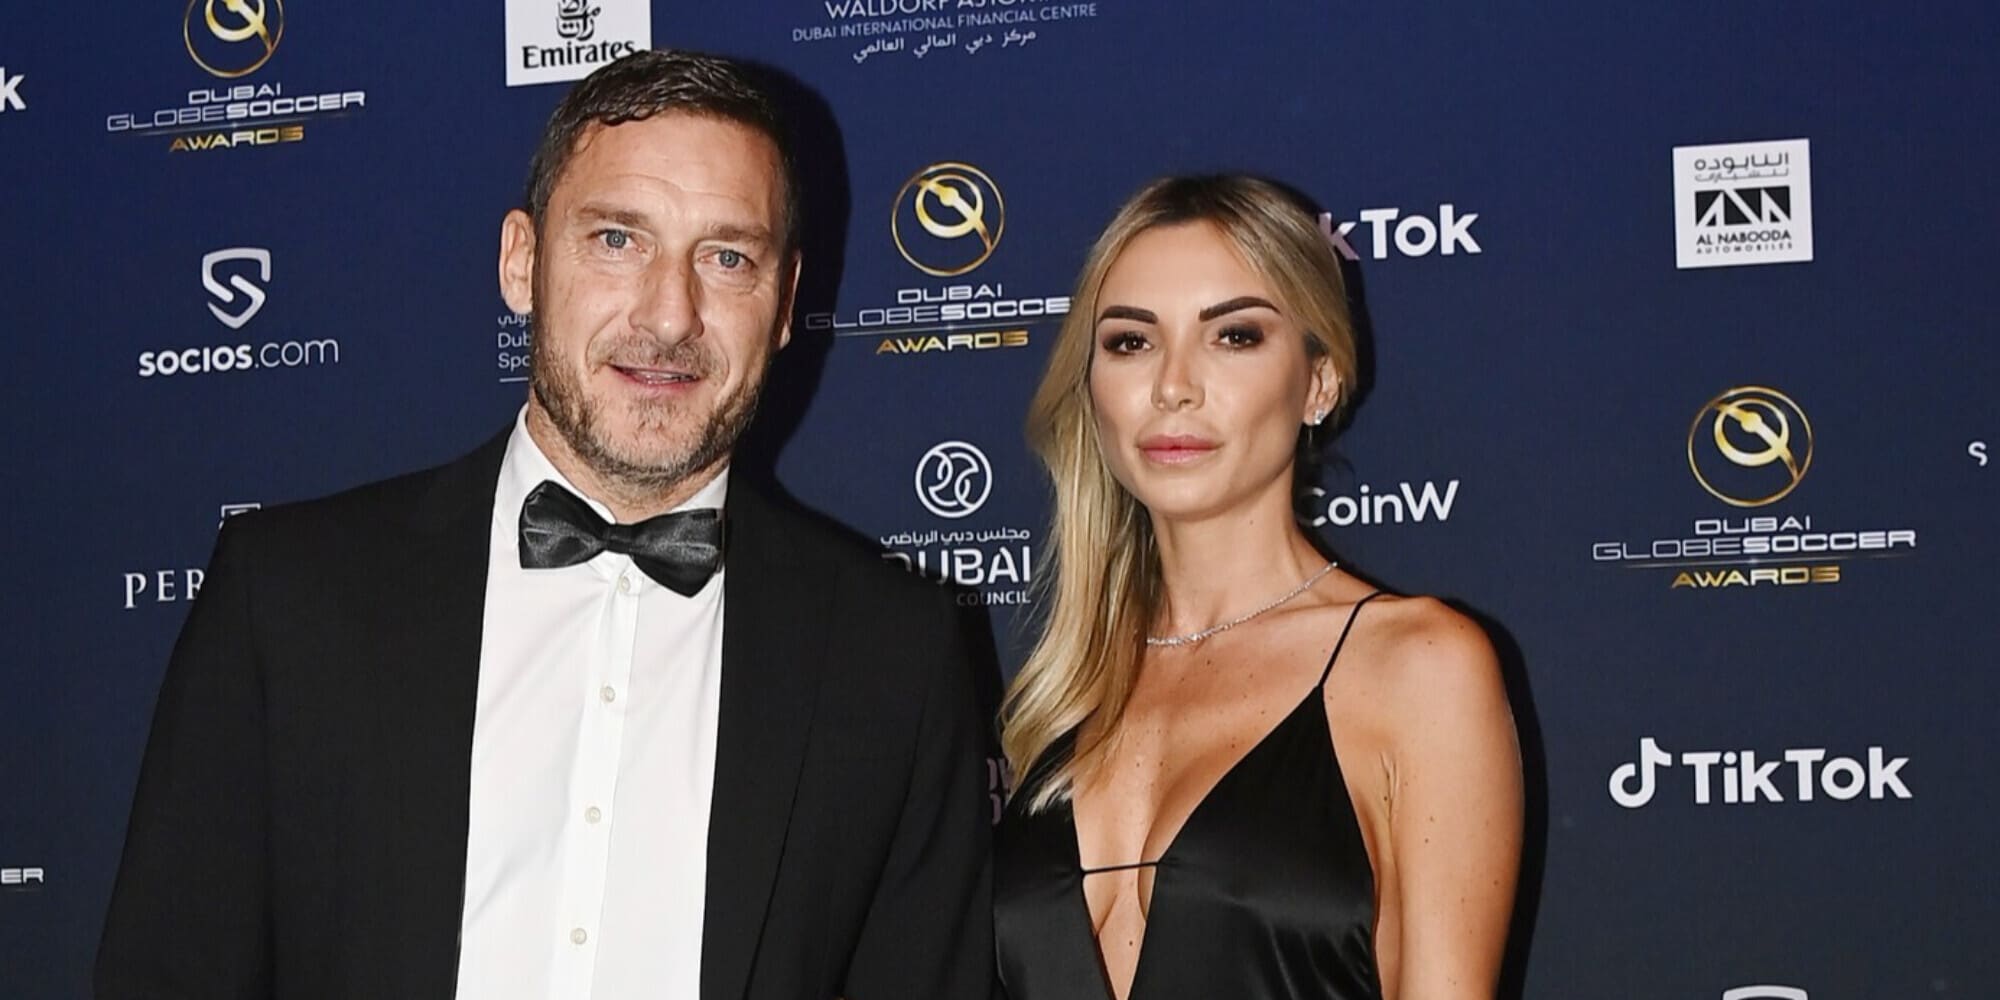 Francesco Totti și Noemi Bocchi au atras toate privirile la Globe Soccer Awards. Prima apariție oficială a cuplului